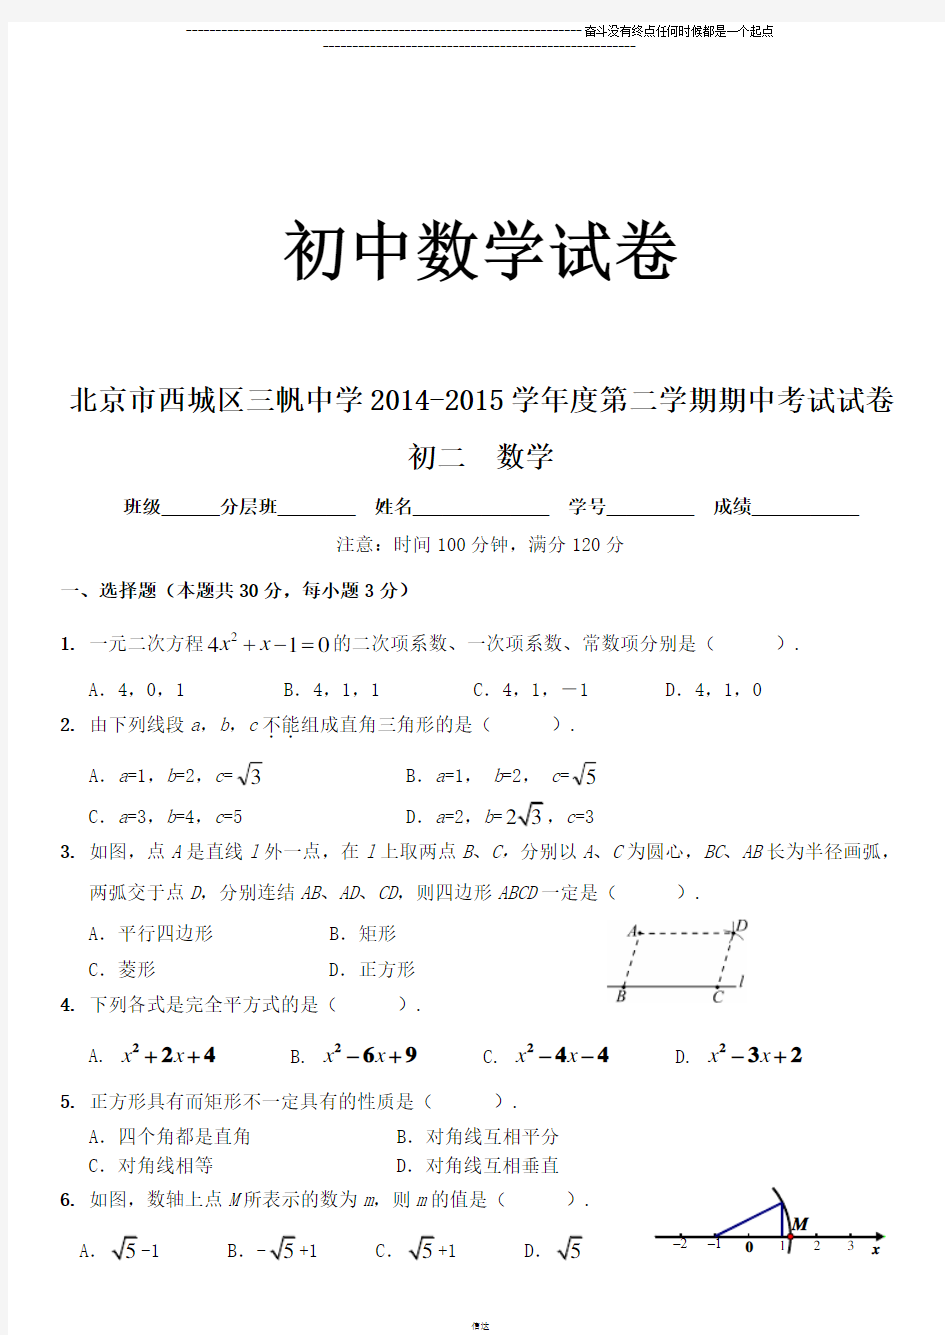 人教数学八年级下册北京市西城区三帆中学第二学期期中考试试卷初二试题及答案